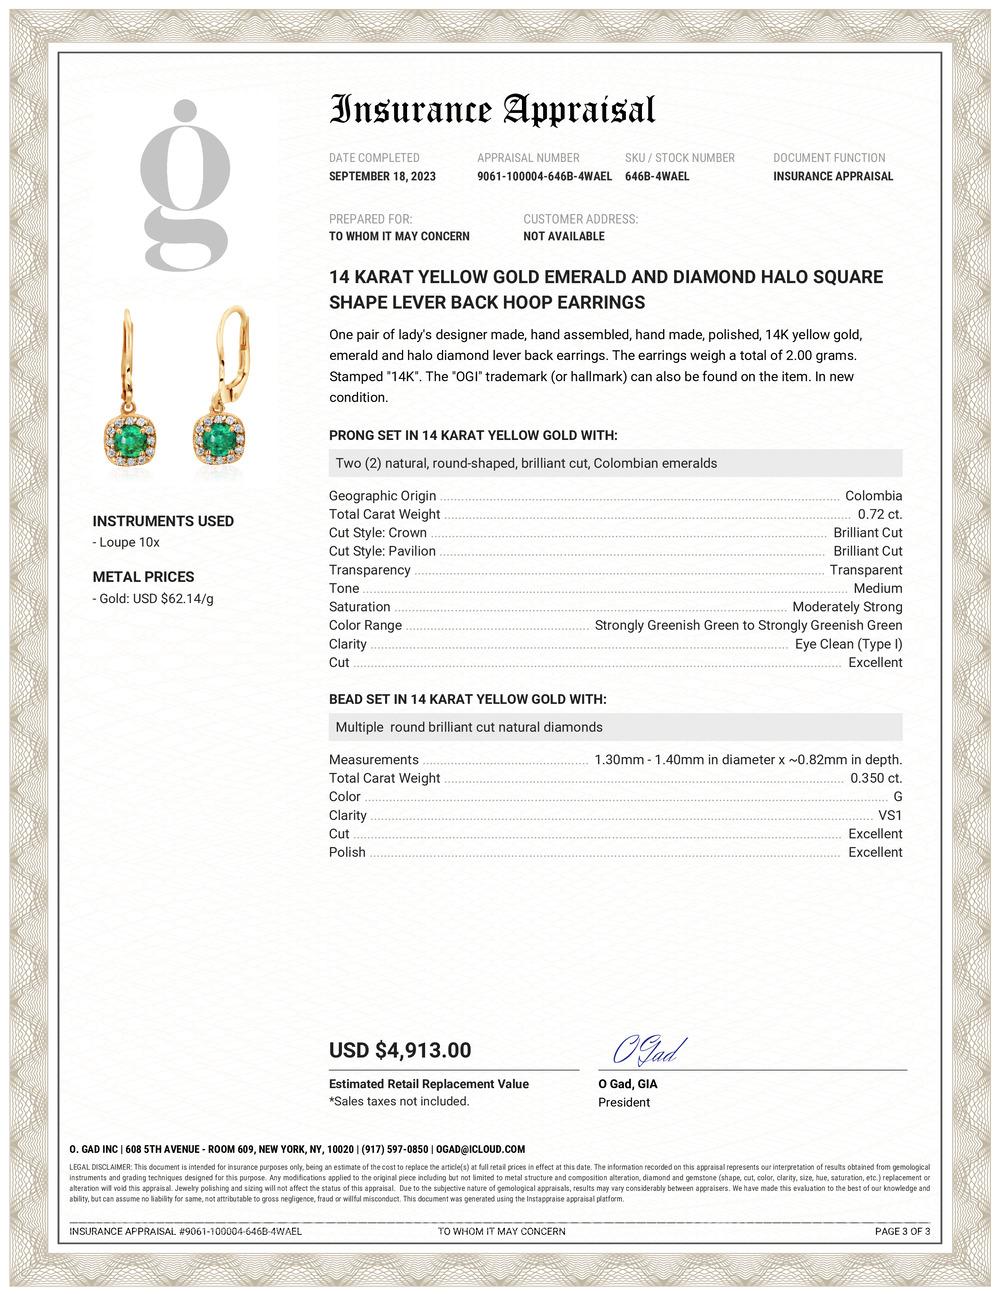 Die Halo LeverBack Hoop Earrings aus 14 Karat Gelbgold mit Diamanten und Smaragden mit einem Gewicht von 0,75 Karat sind eine Art von Schmuck, bei dem Diamanten und Smaragde in einem Halo-Design um einen Ohrring herum angeordnet sind. Die Ohrringe